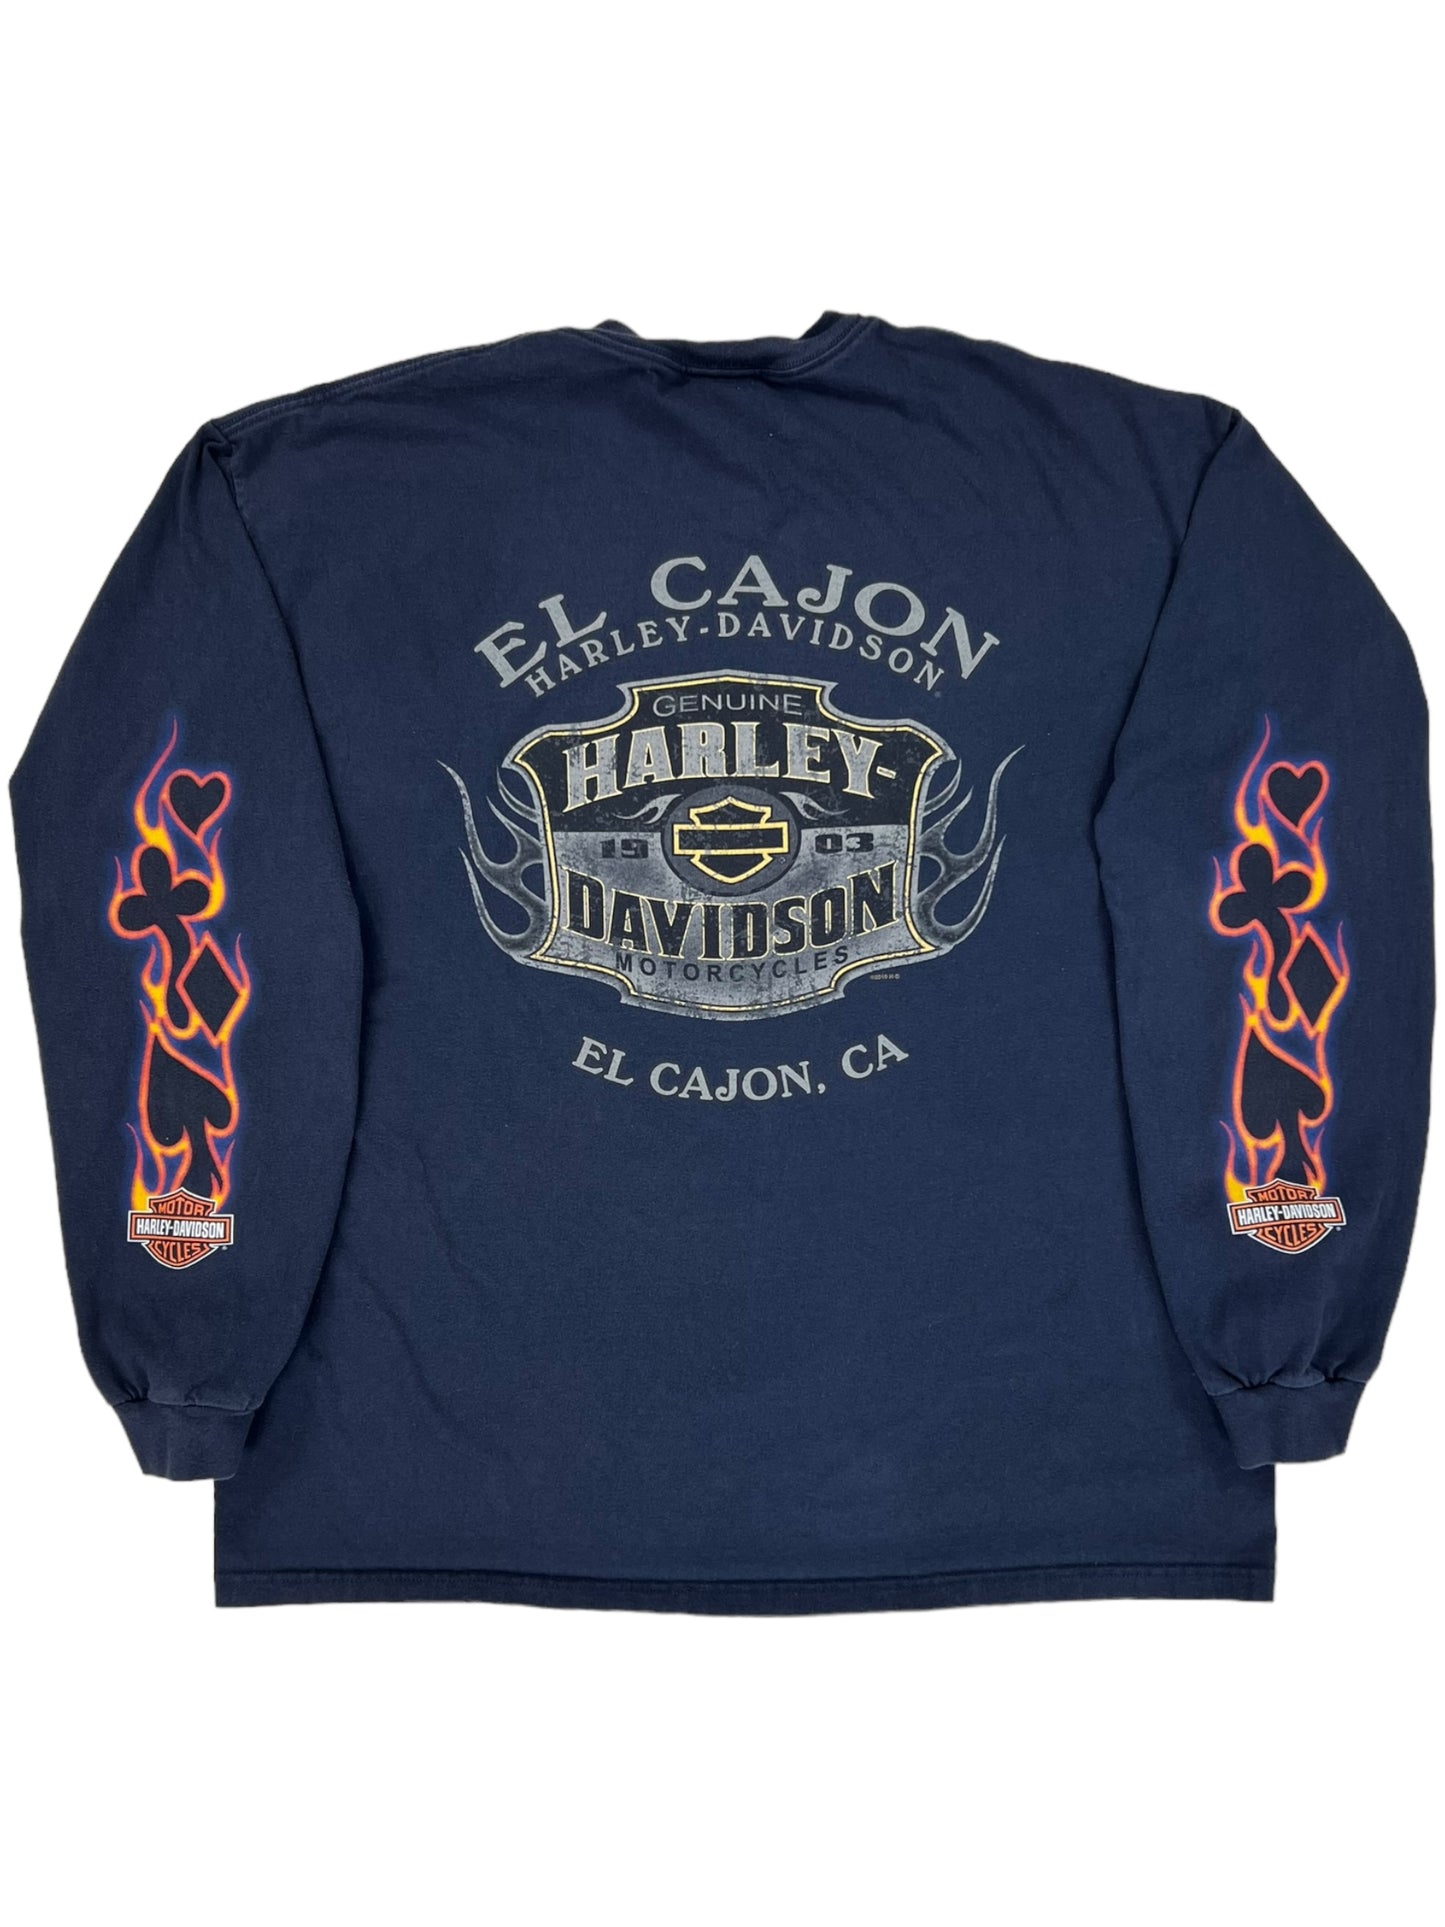 2010 Harley Davidson Motorcycles flames print long sleeve shirt (XL)